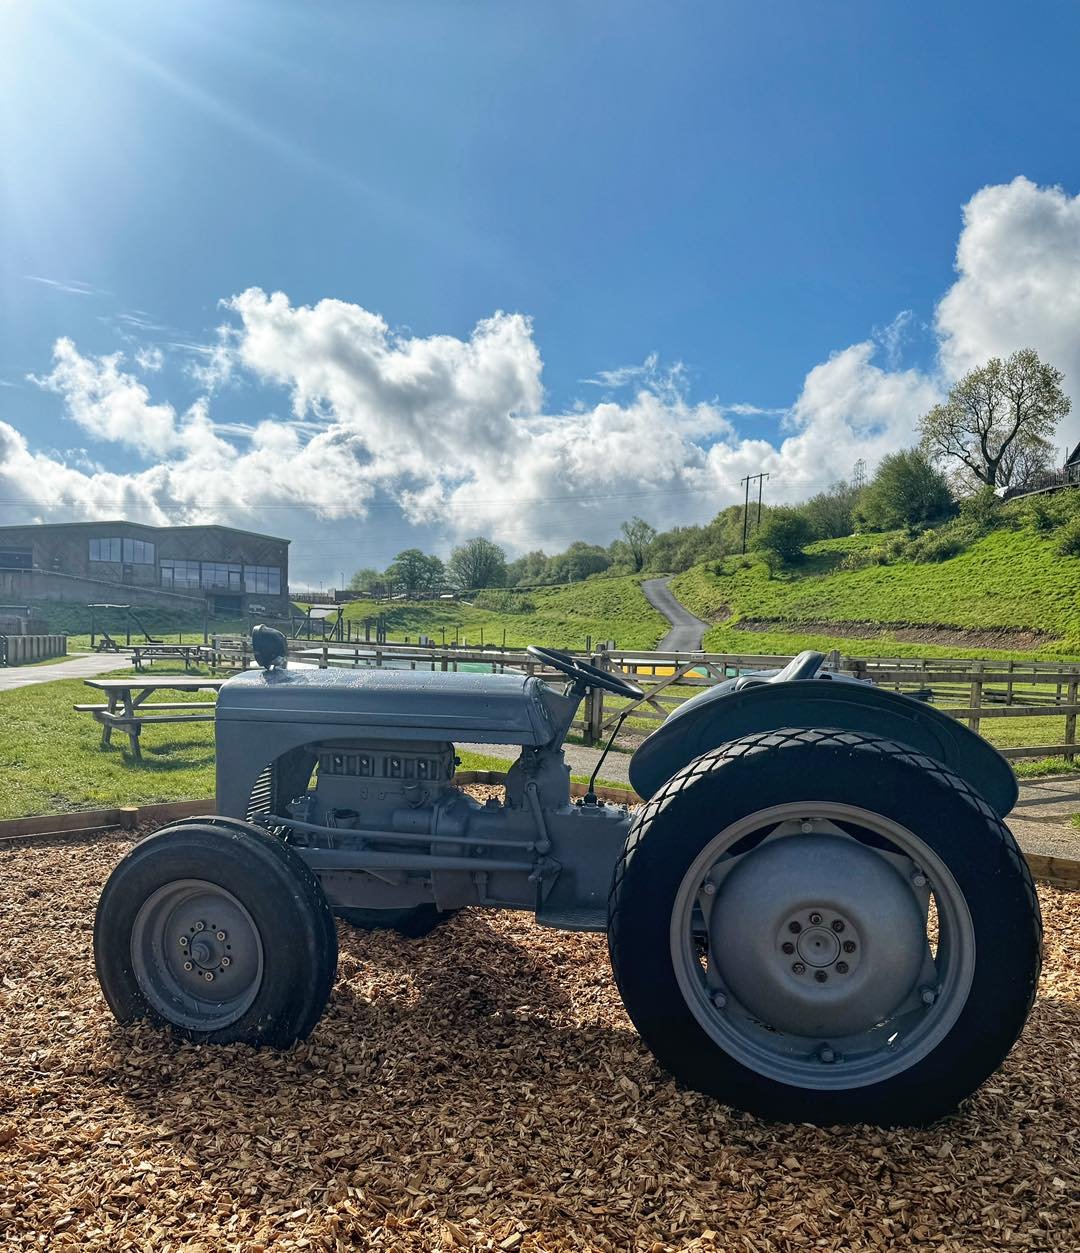 B E E P  B E E P 🚜
Colliers Adventure Farms new addition 
Take a picture in our new tractor and tag us in 📸